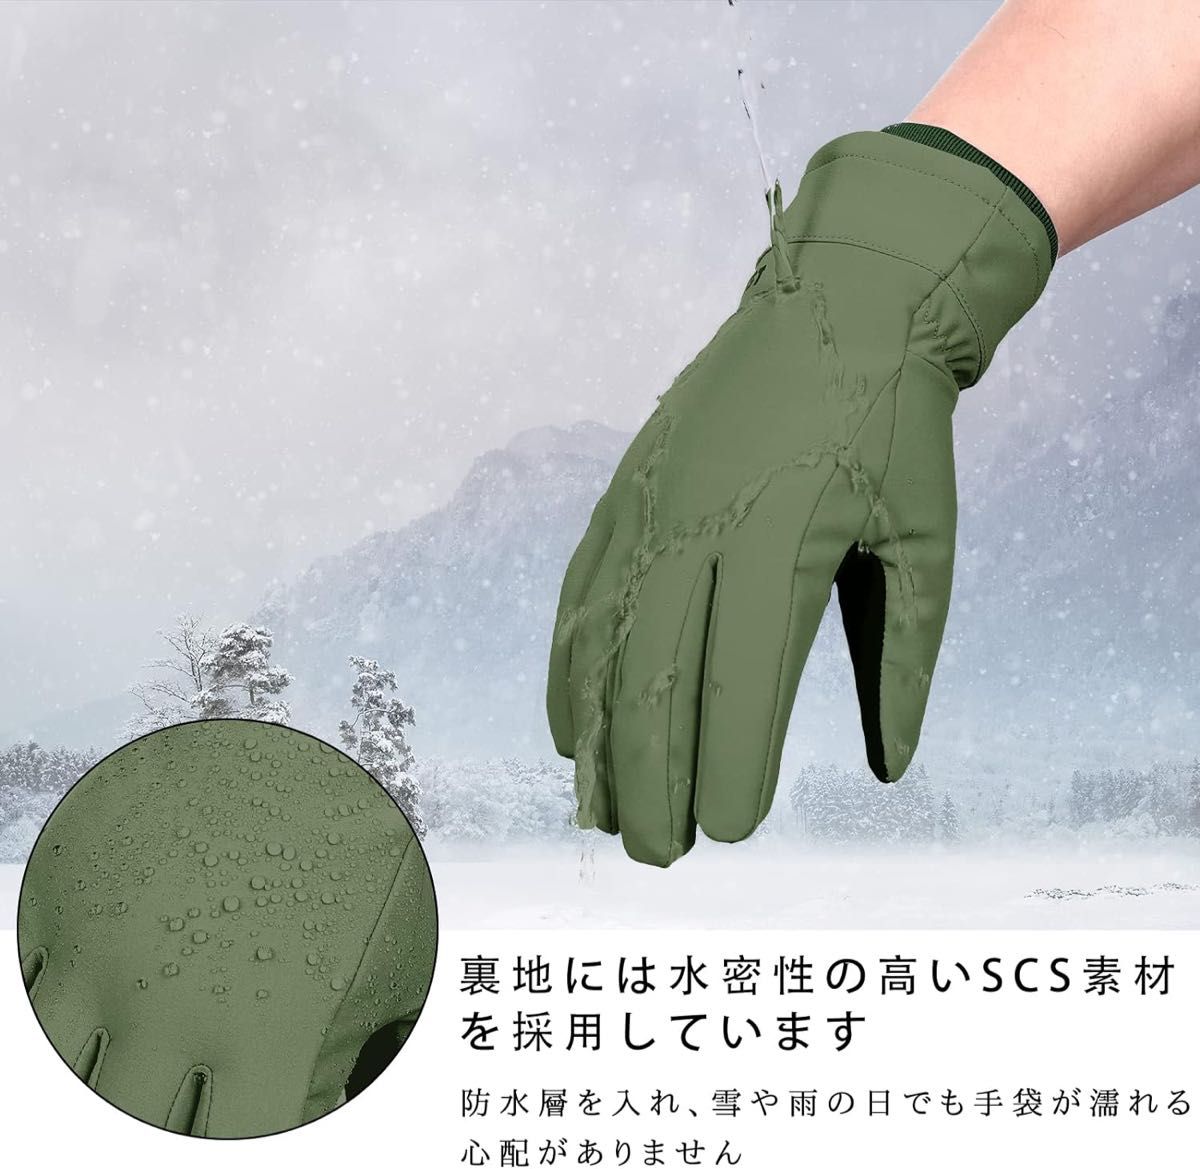 【新品未使用】S カーキ 手袋 裏起毛 グローブ 防風 防水 タッチパネル対応